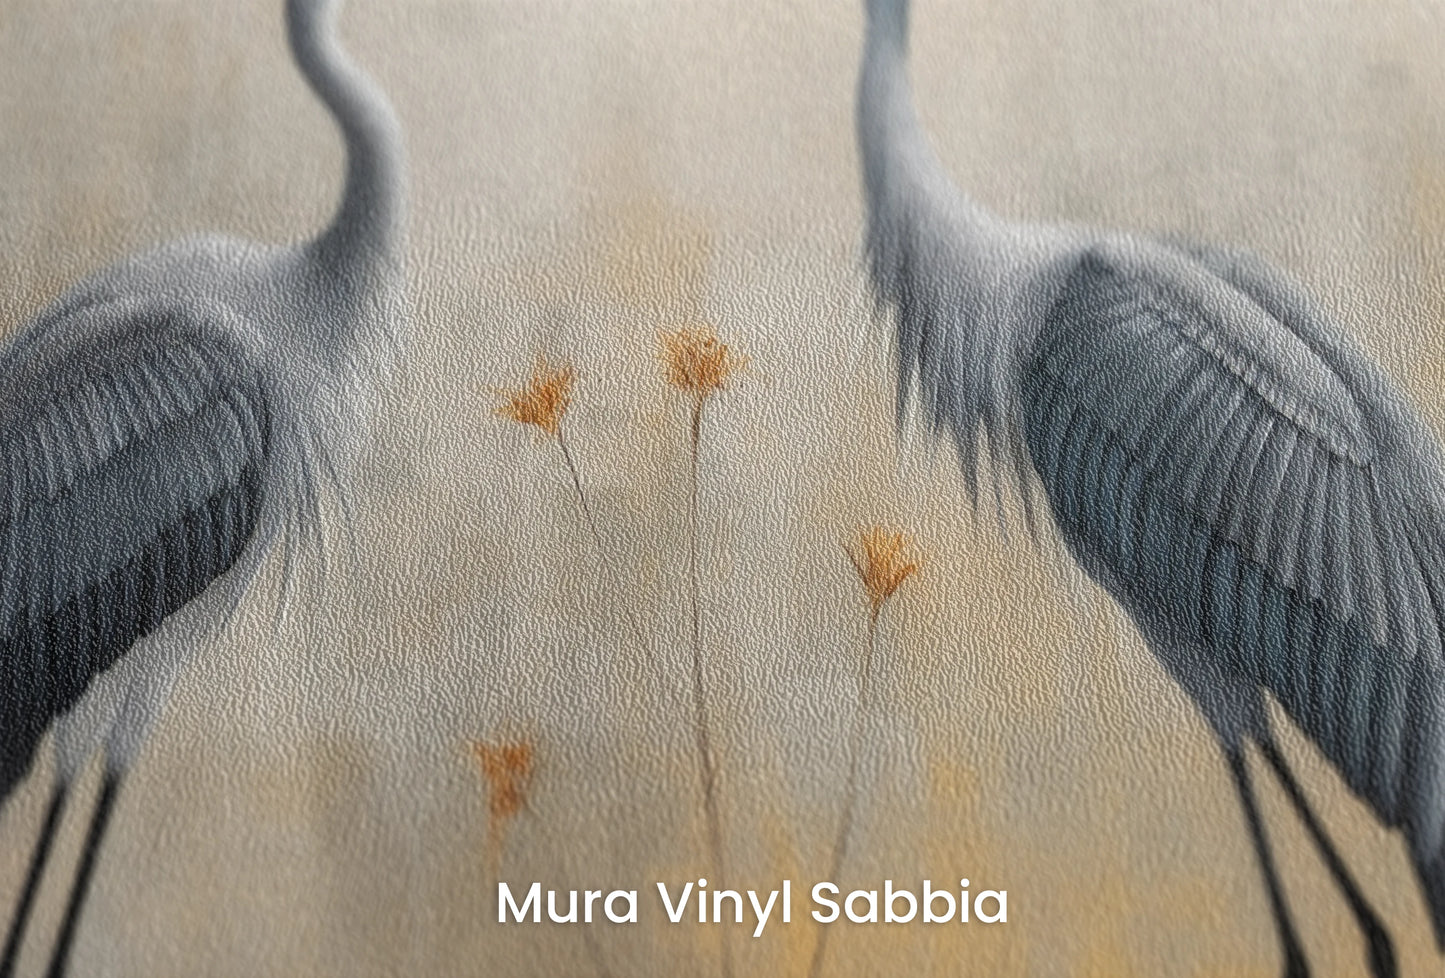 Zbliżenie na artystyczną fototapetę o nazwie Tranquil Unity na podłożu Mura Vinyl Sabbia struktura grubego ziarna piasku.